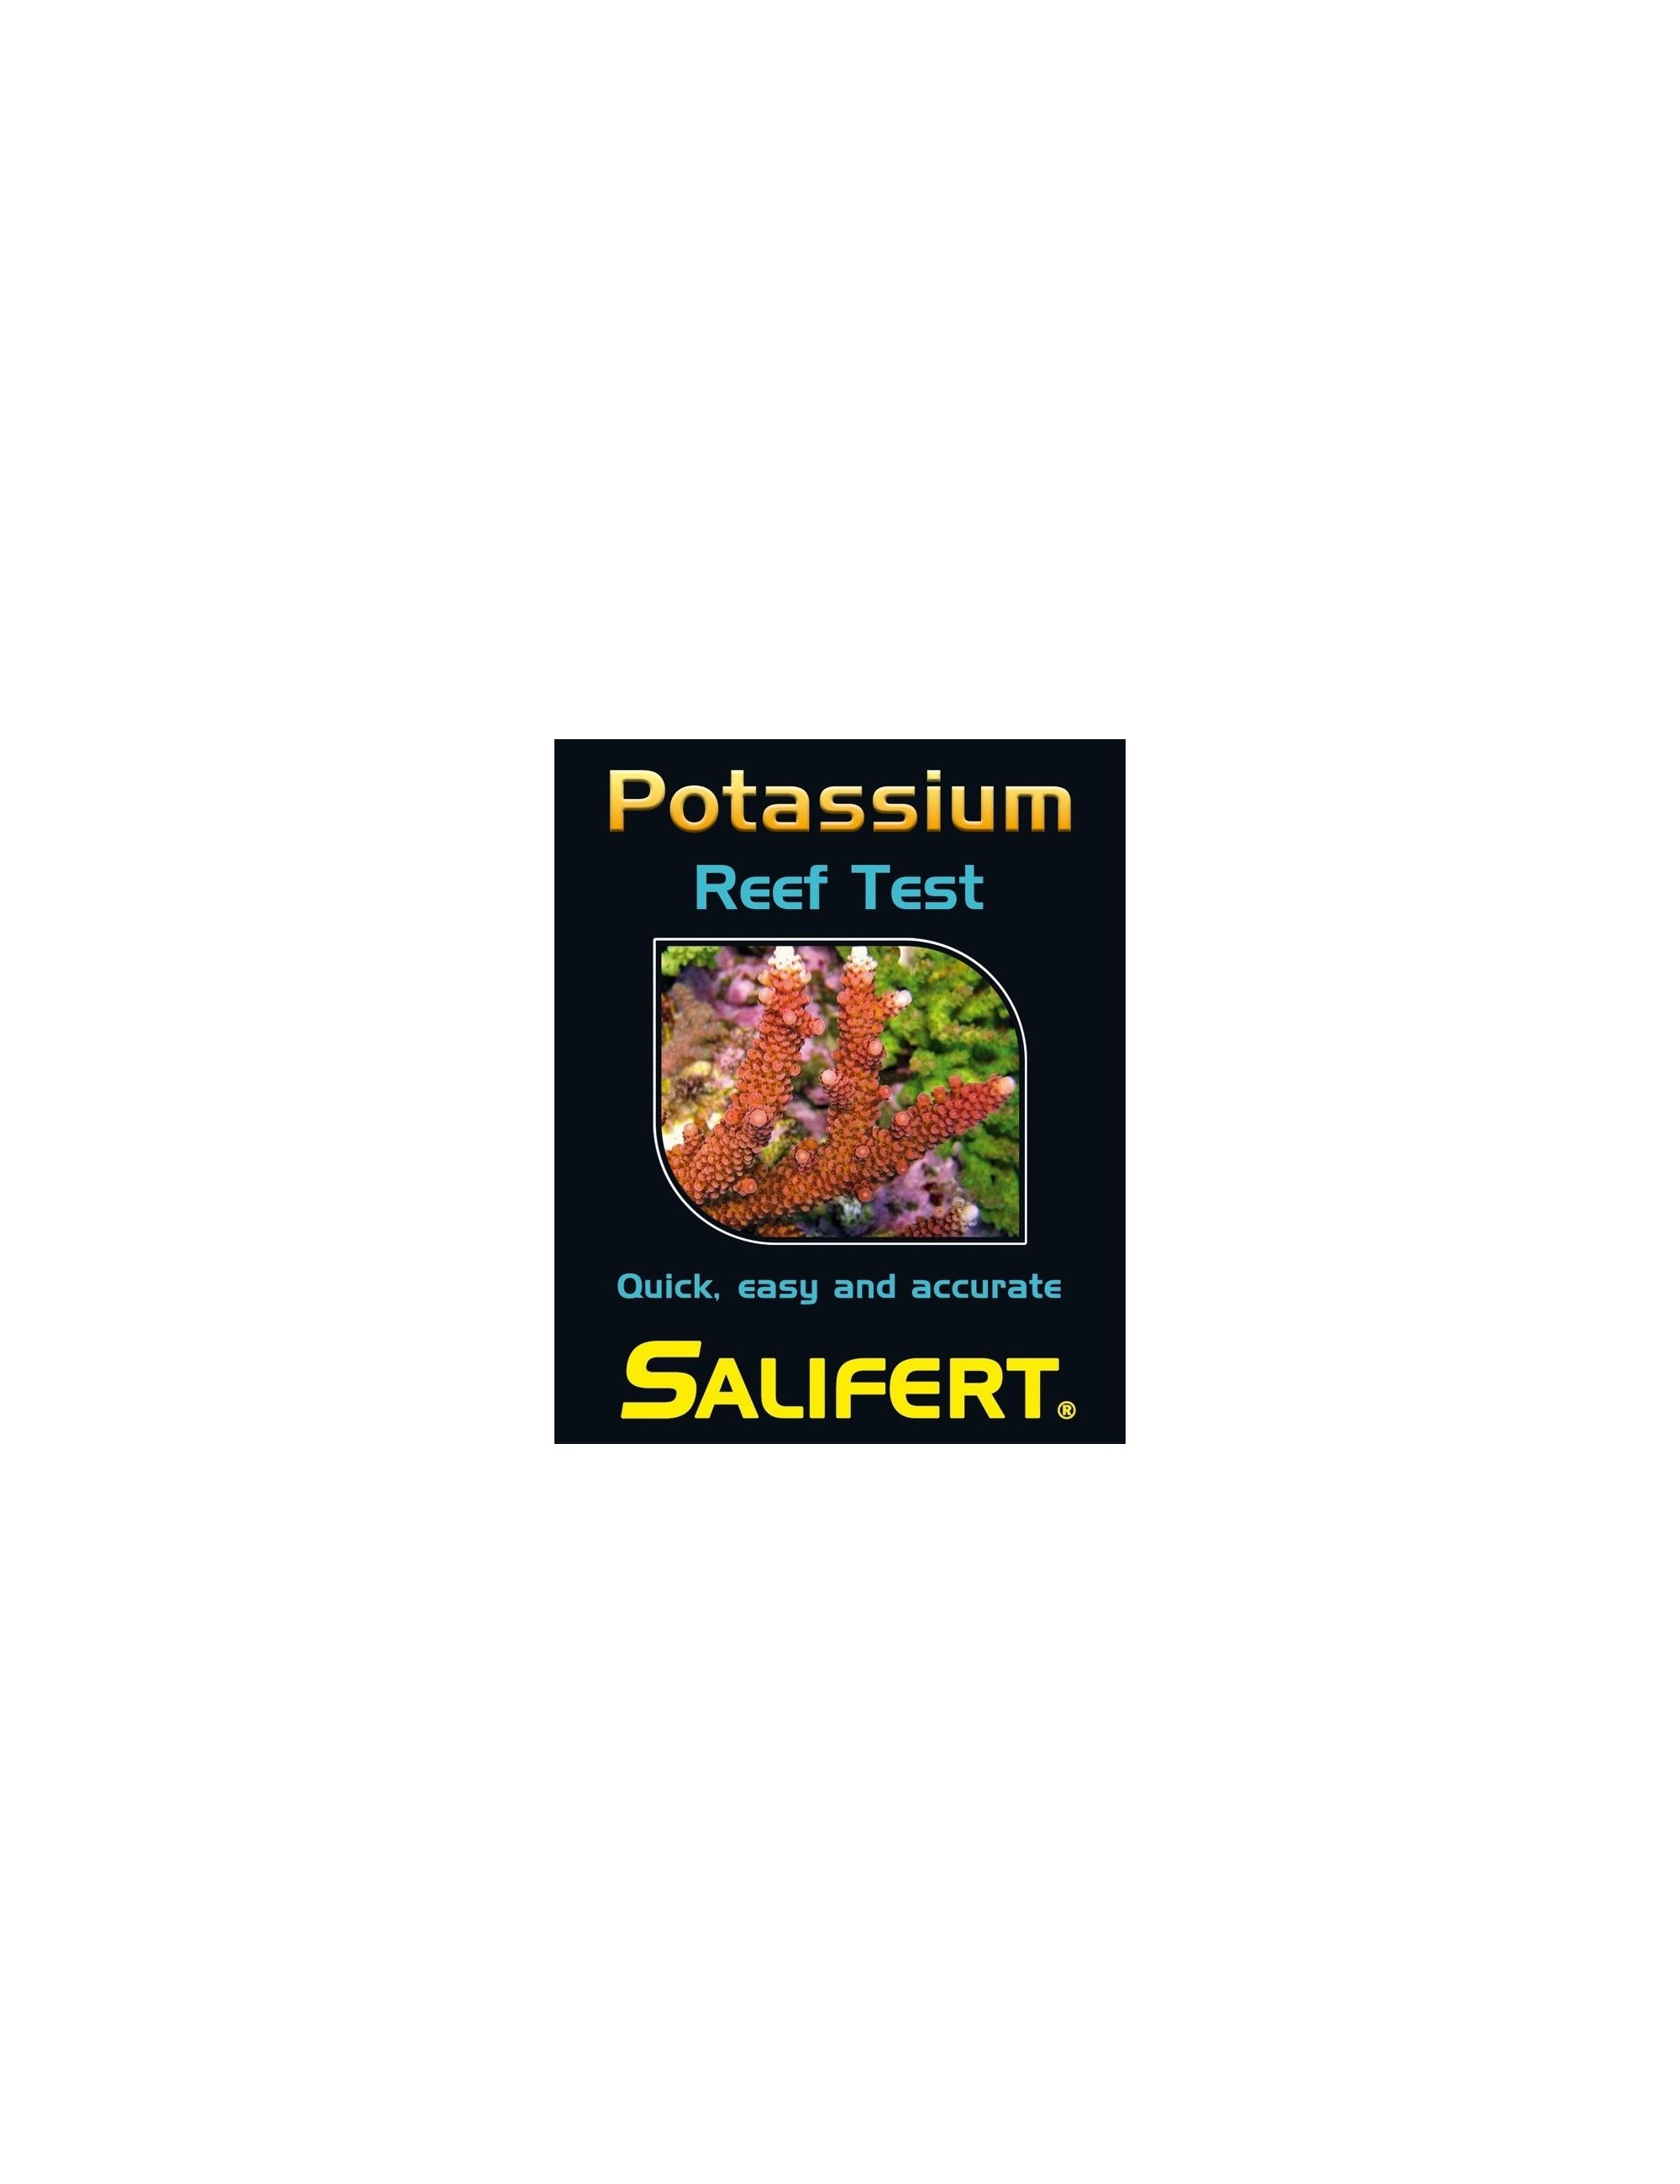 SALIFERT - Potassium / Kalium Profi Test